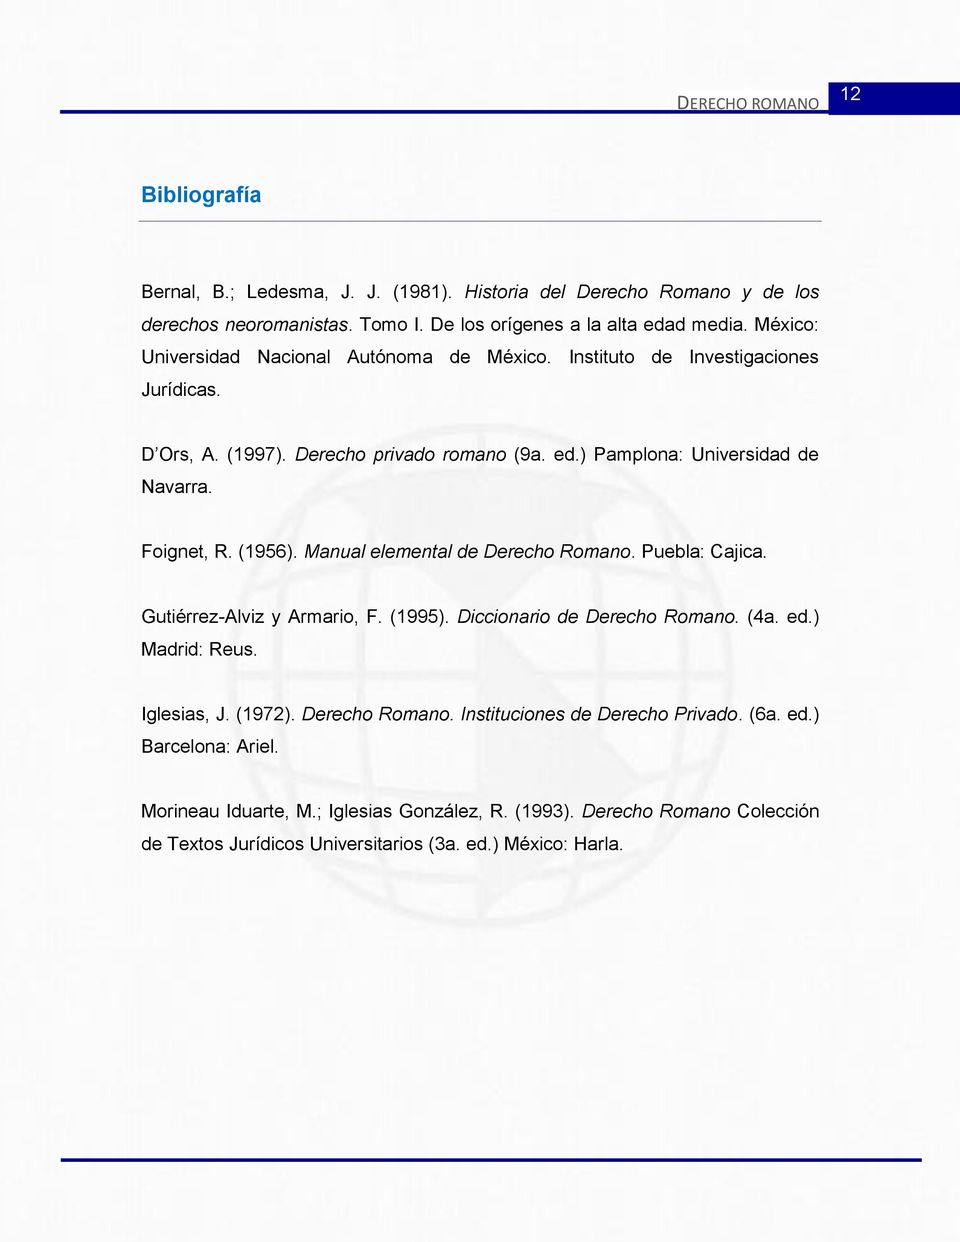 Foignet, R. (1956). Manual elemental de Derecho Romano. Puebla: Cajica. Gutiérrez-Alviz y Armario, F. (1995). Diccionario de Derecho Romano. (4a. ed.) Madrid: Reus. Iglesias, J.